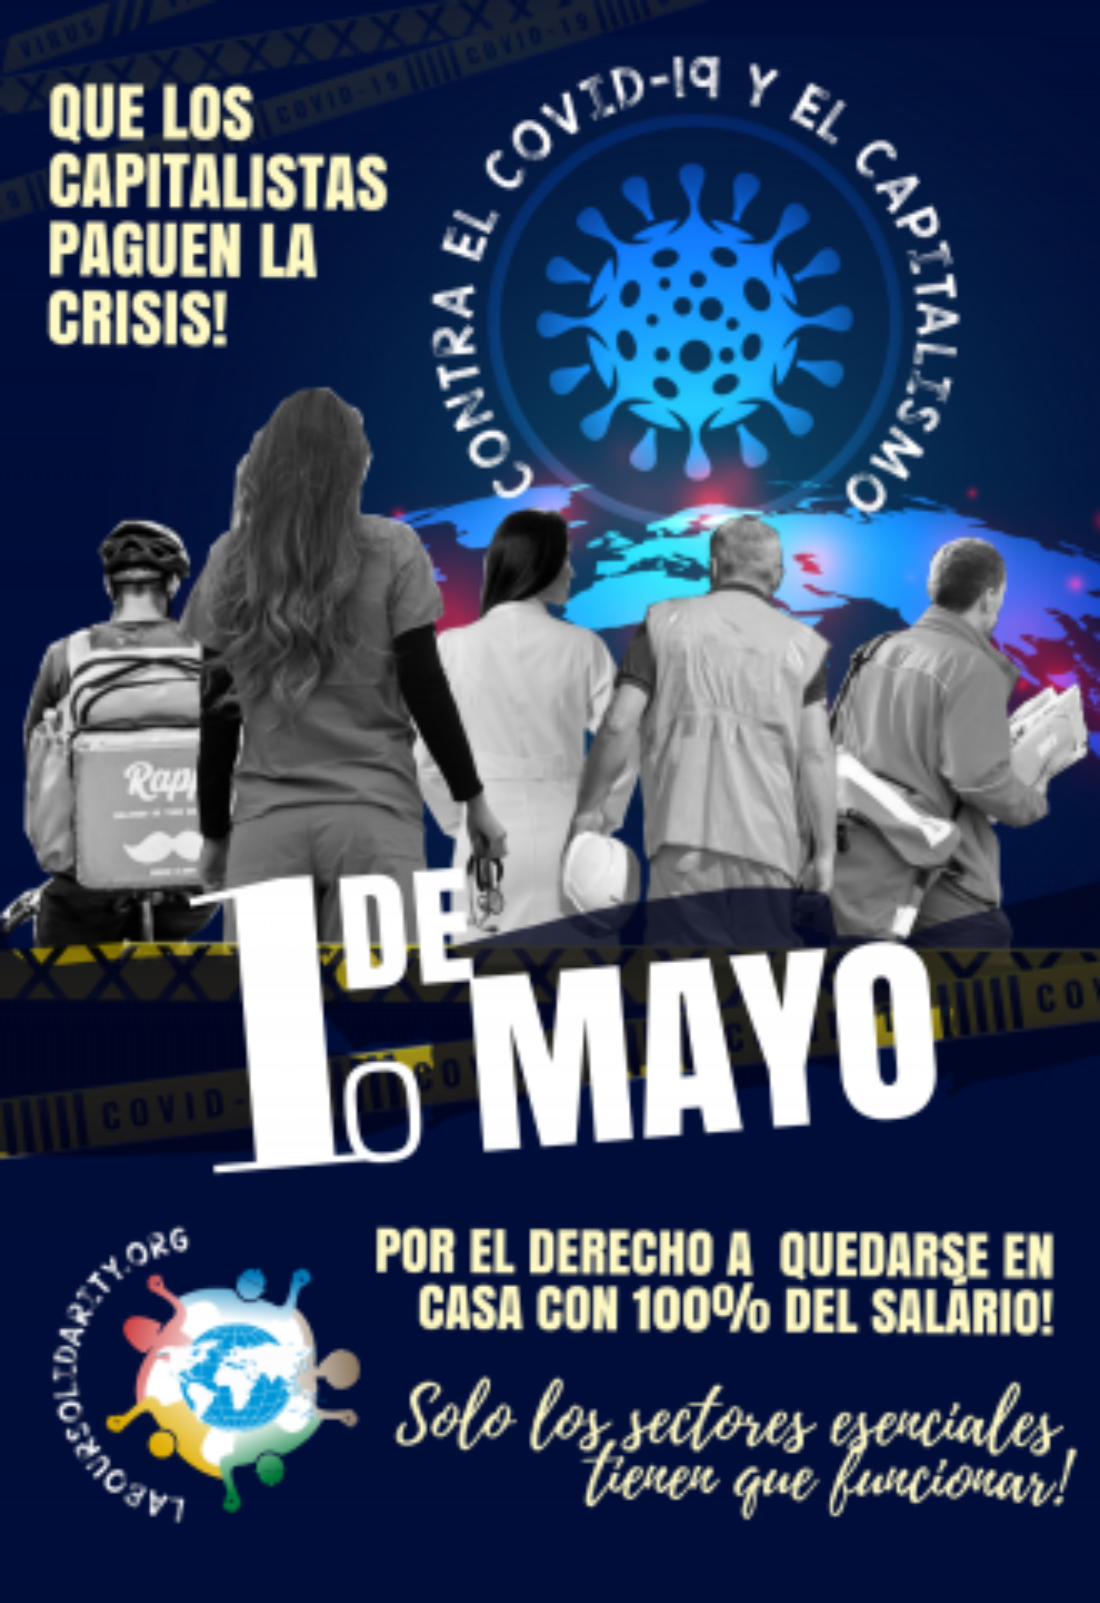 1º de mayo: Día histórico y de lucha internacional de la clase trabajadora